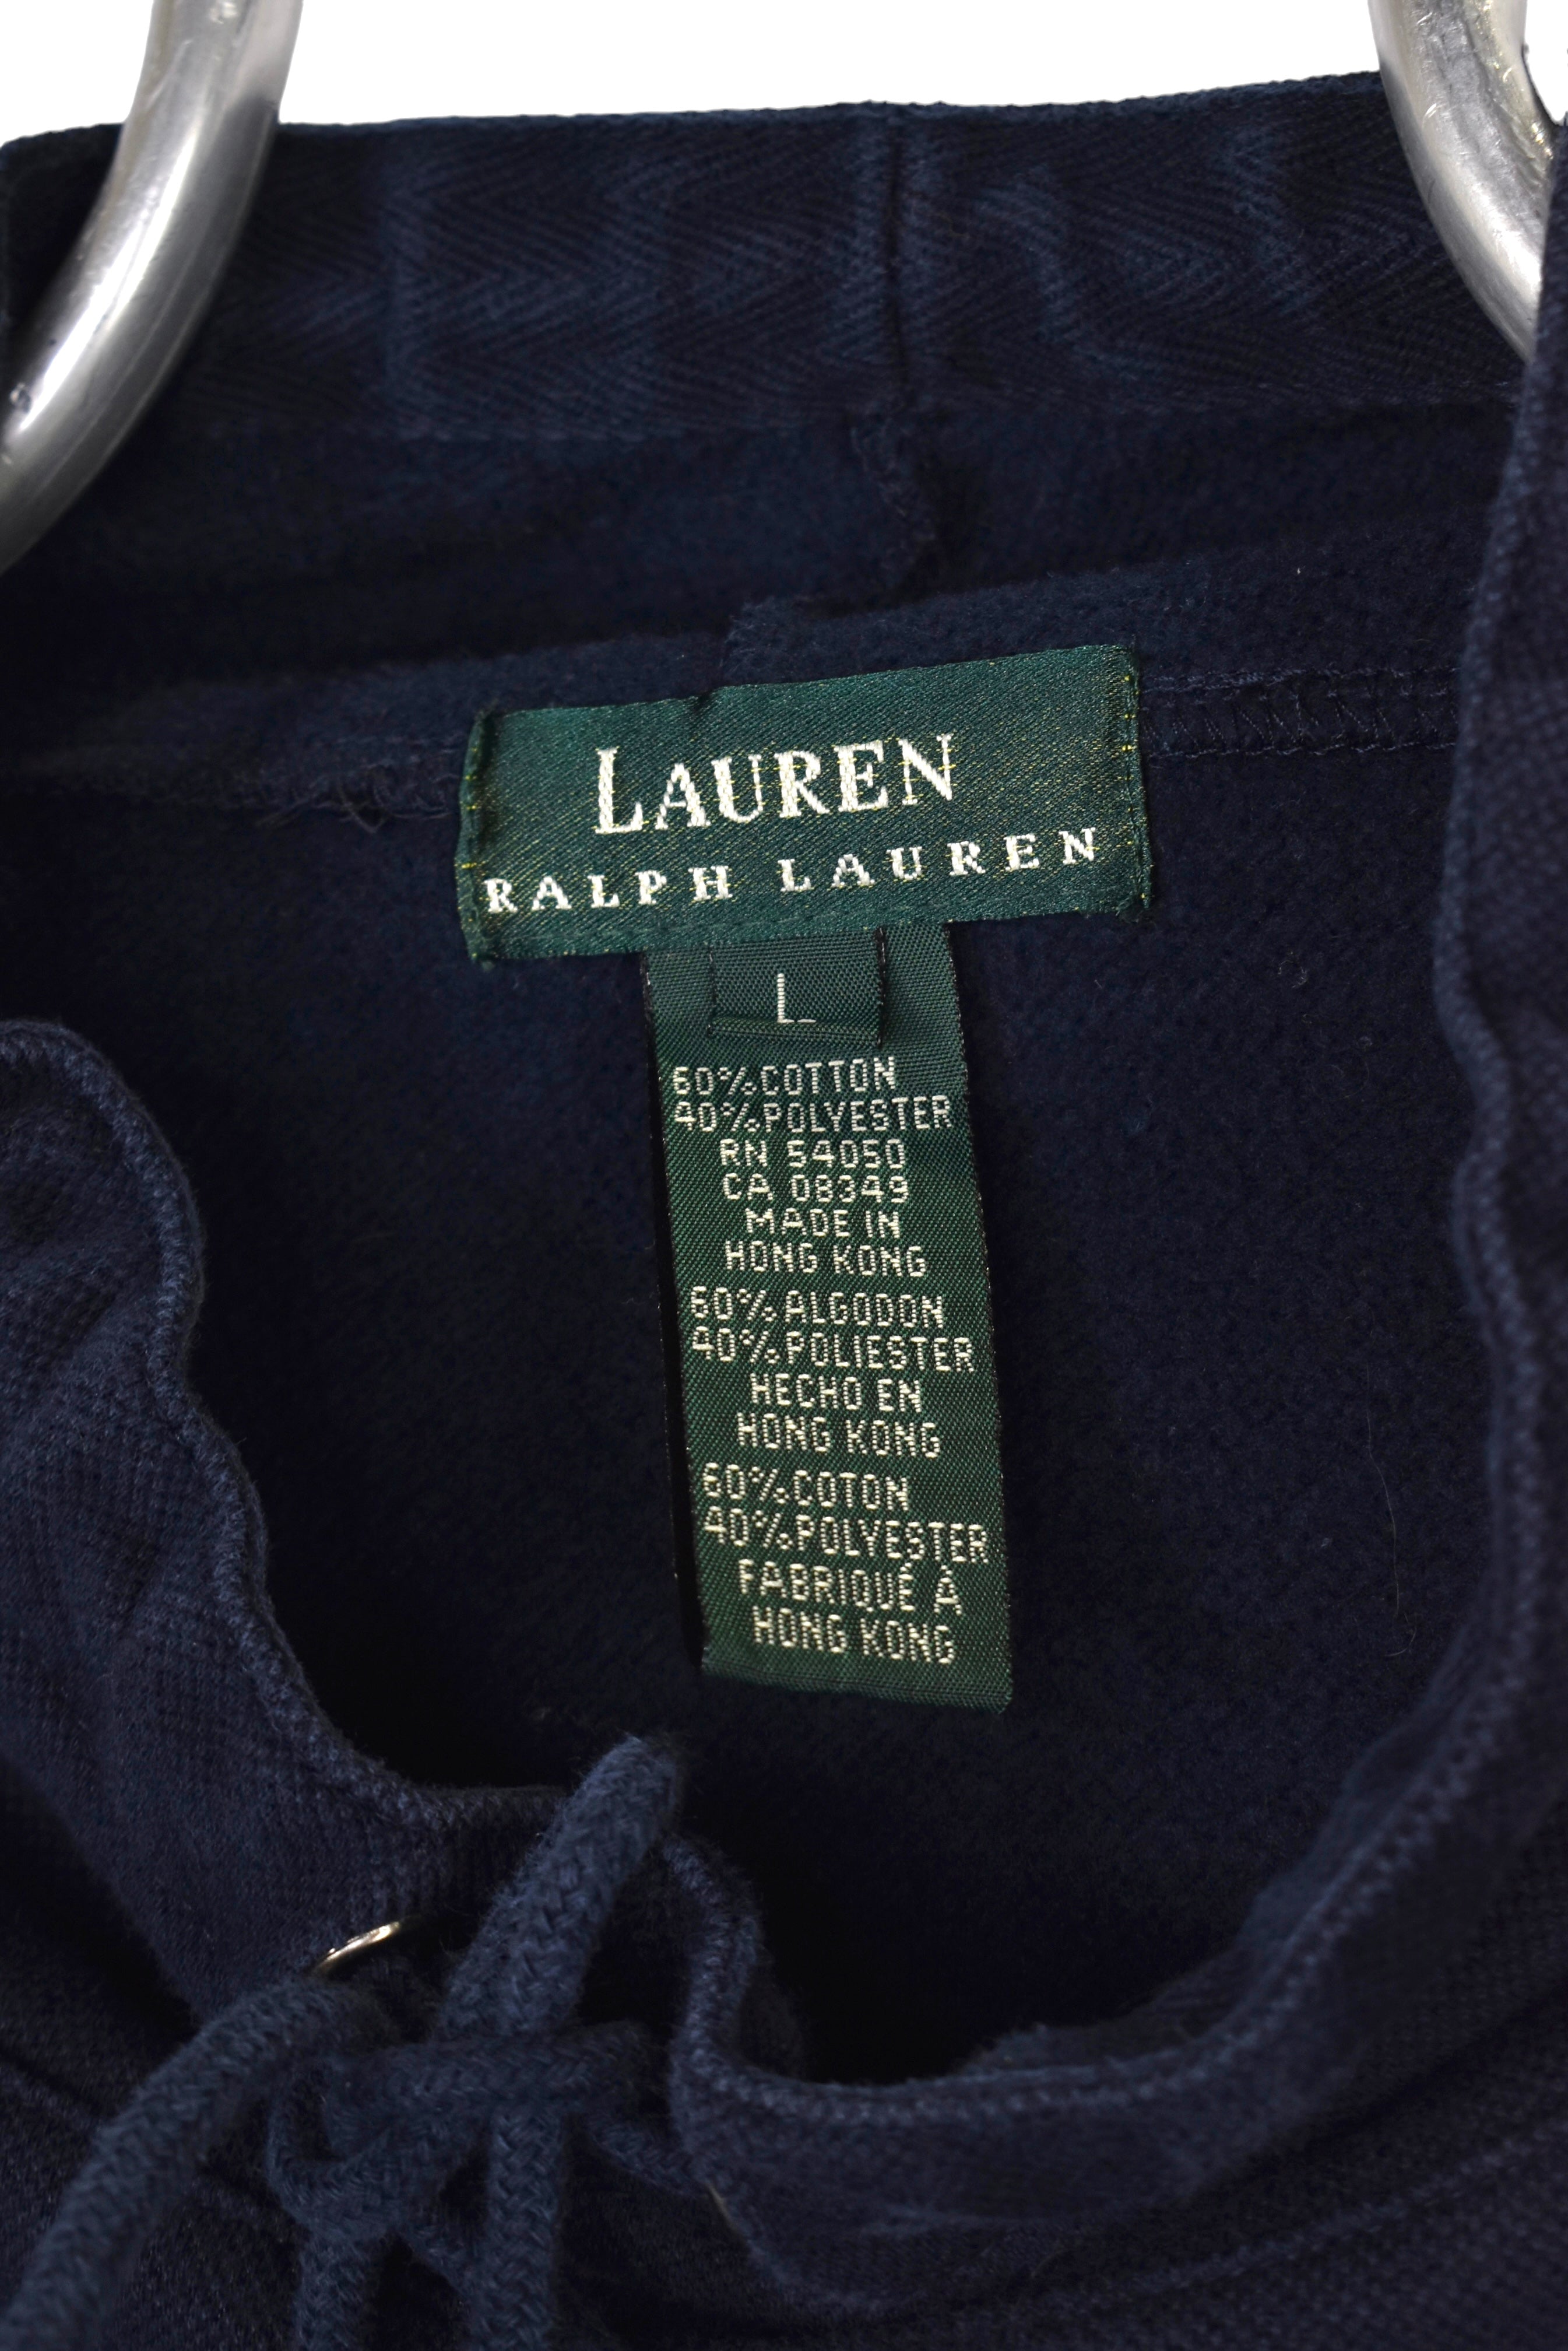 Vintage Ralph Lauren sweatshirt, navy blue turtleneck - Medium